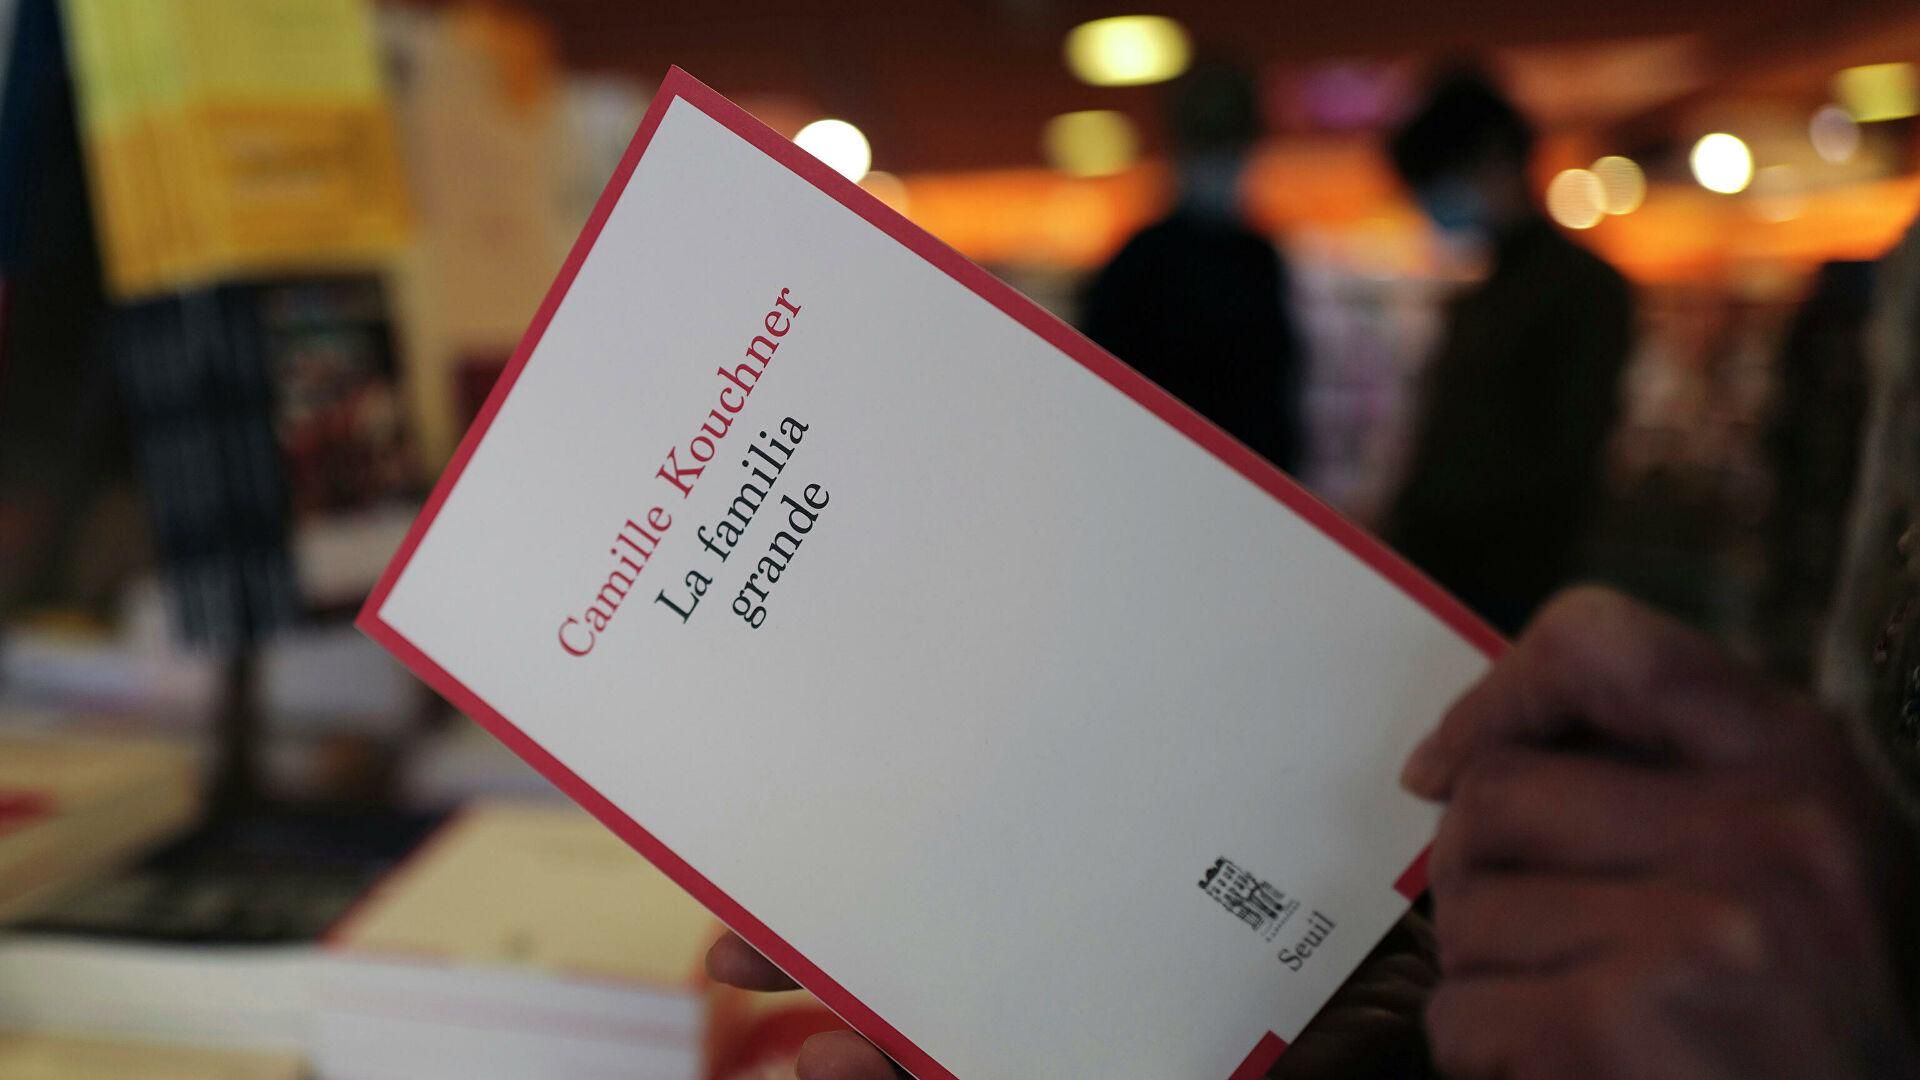 © AP Photo / Francois Mori Человек держит книгу Камиллы Кушнер "La Familia Grande" в книжном магазине Парижа